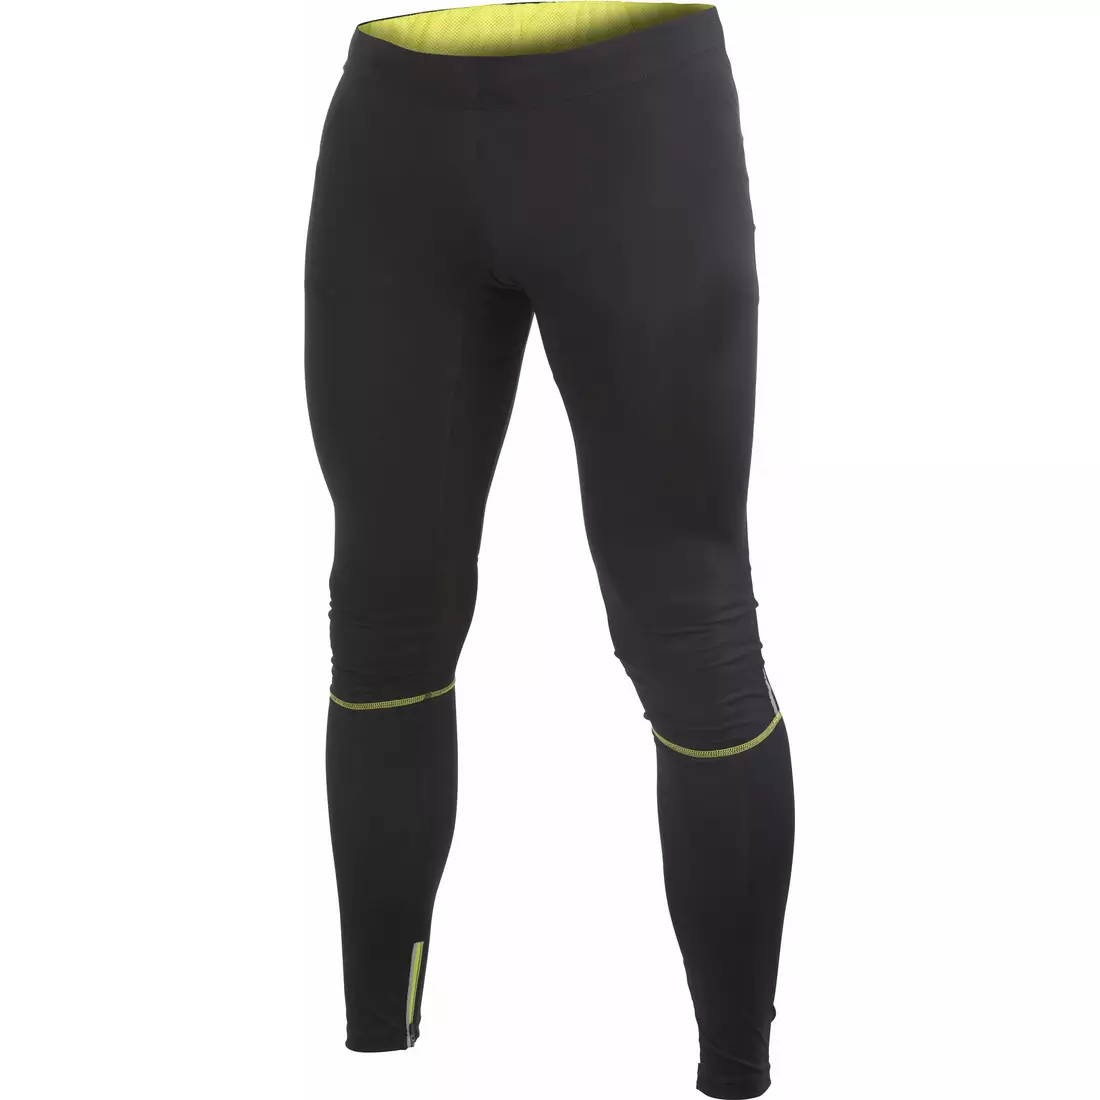 Pantaloni de alergare pentru bărbați CRAFT Performance Tights, neizolați 1902502-9645